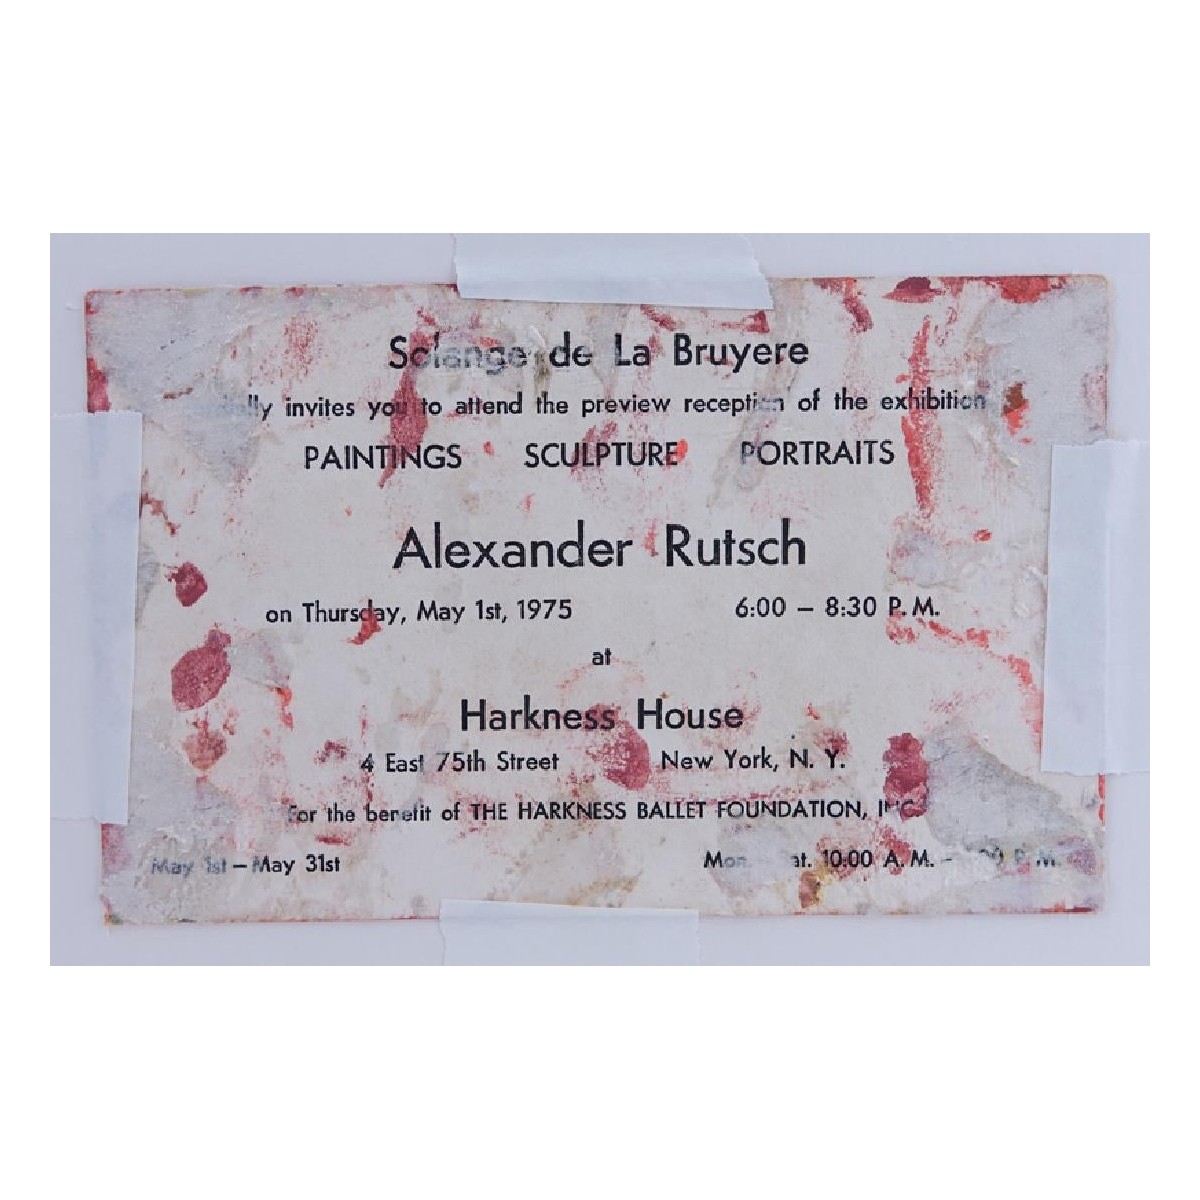 Alexander Rutsch, American (1918 - 1997)